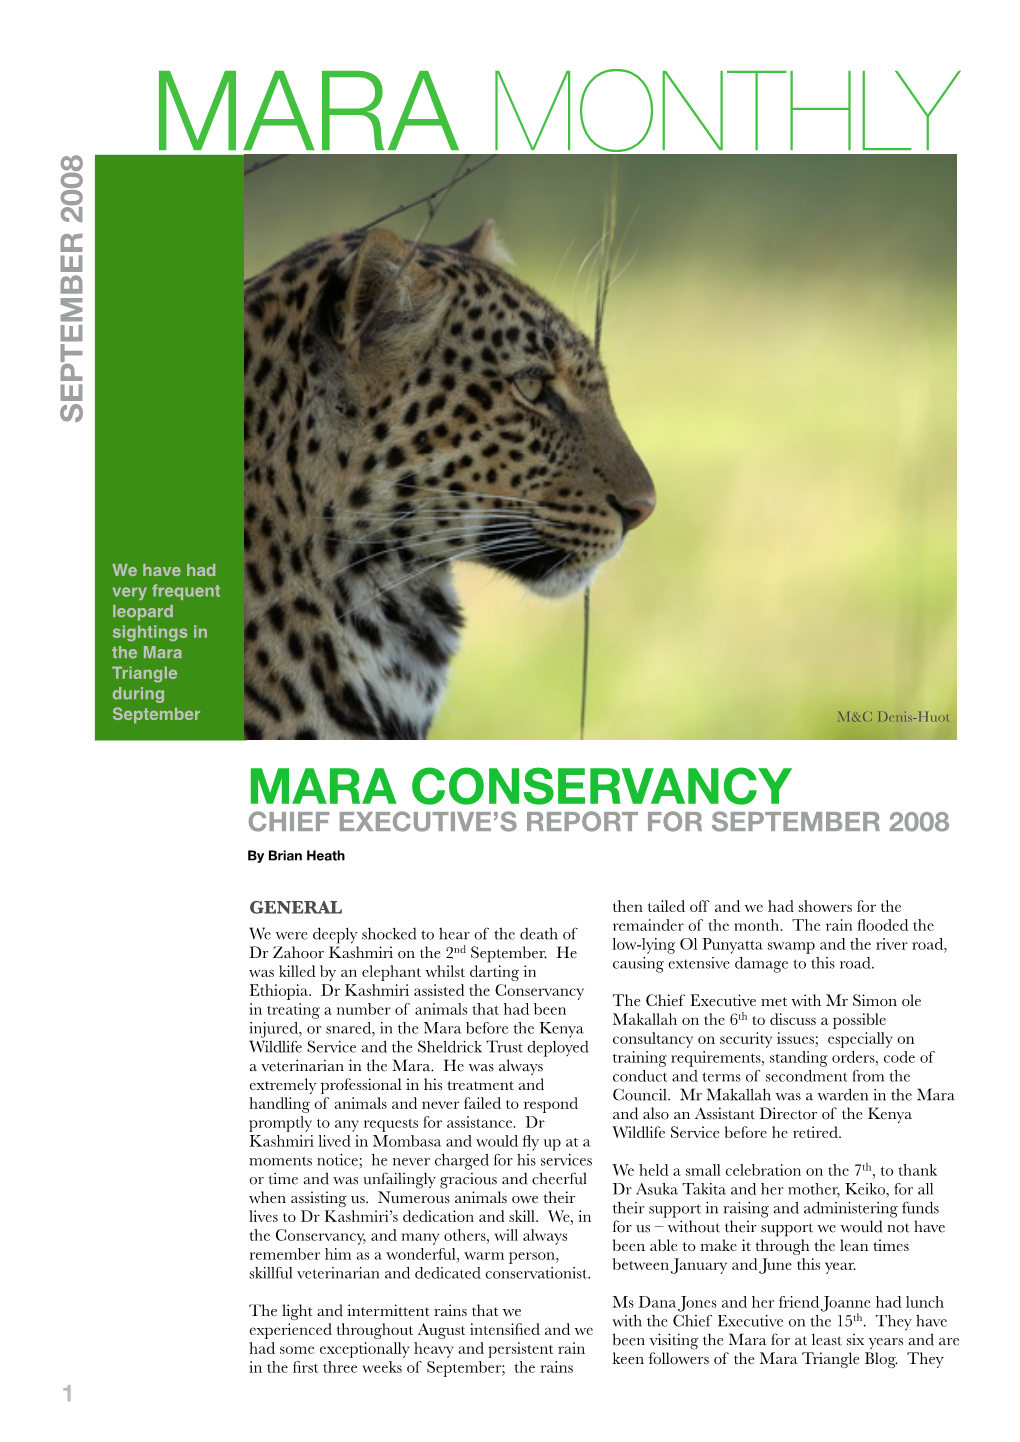 Mara Monthly September 2008